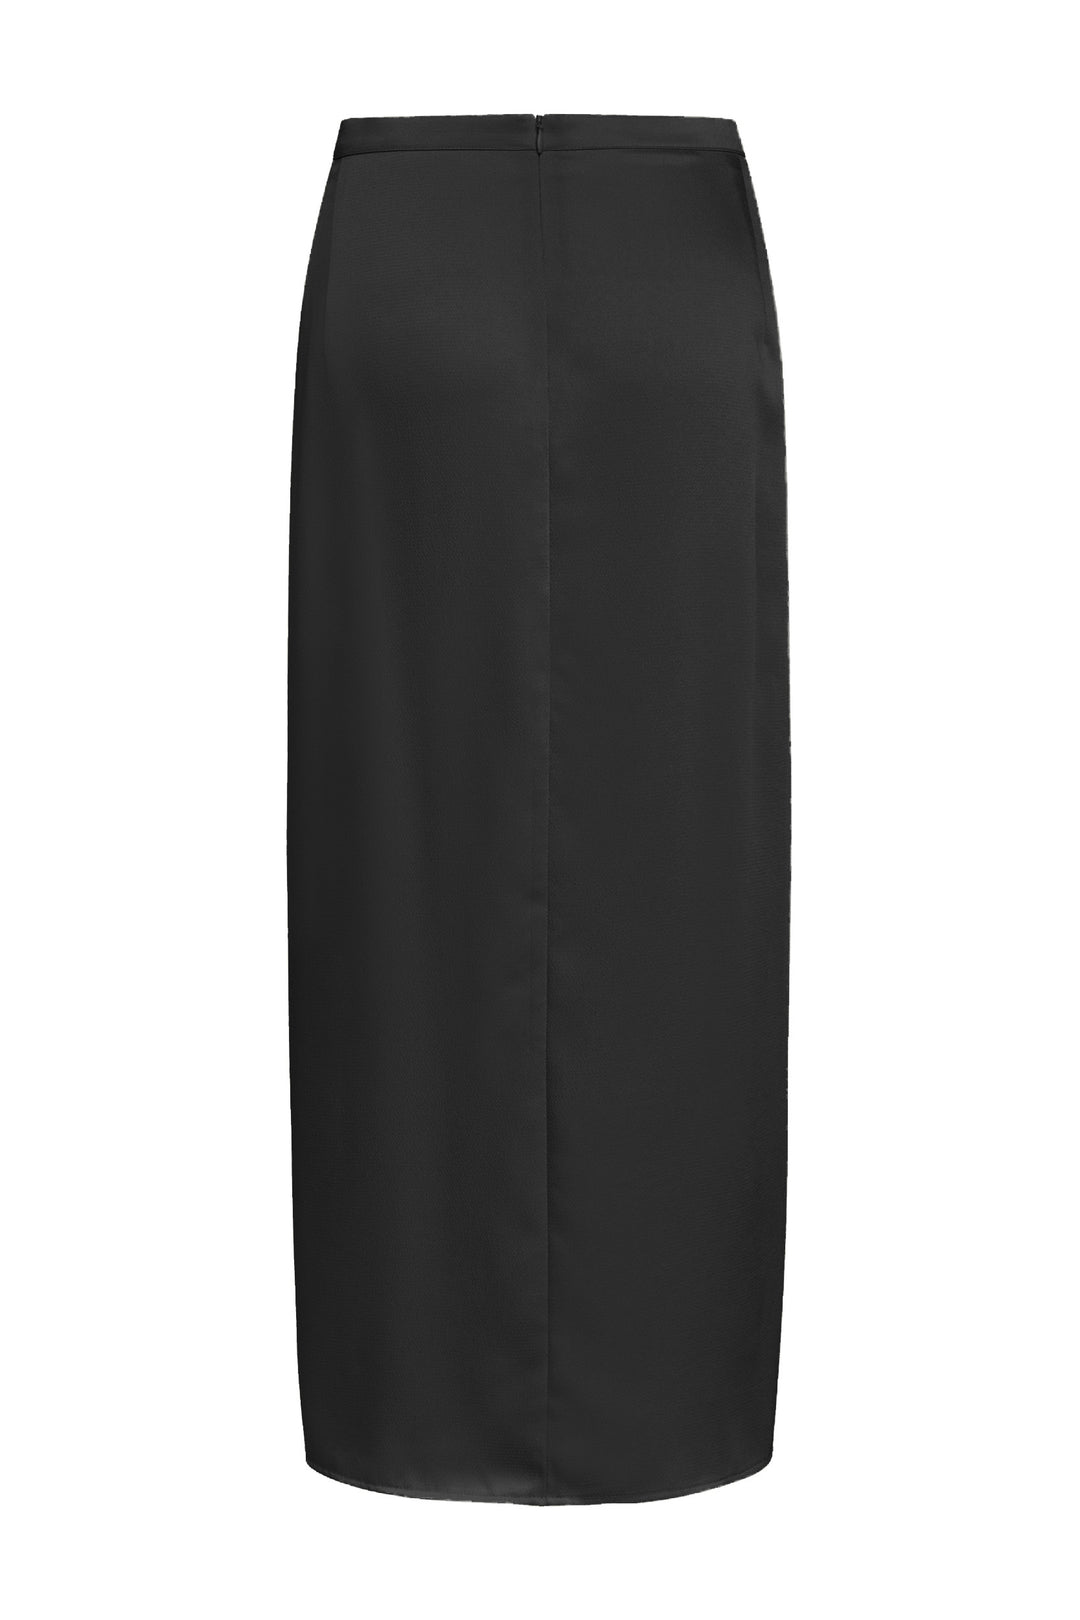 Bruuns Bazaar Women CedarsBBMaian skirt Skirt Black